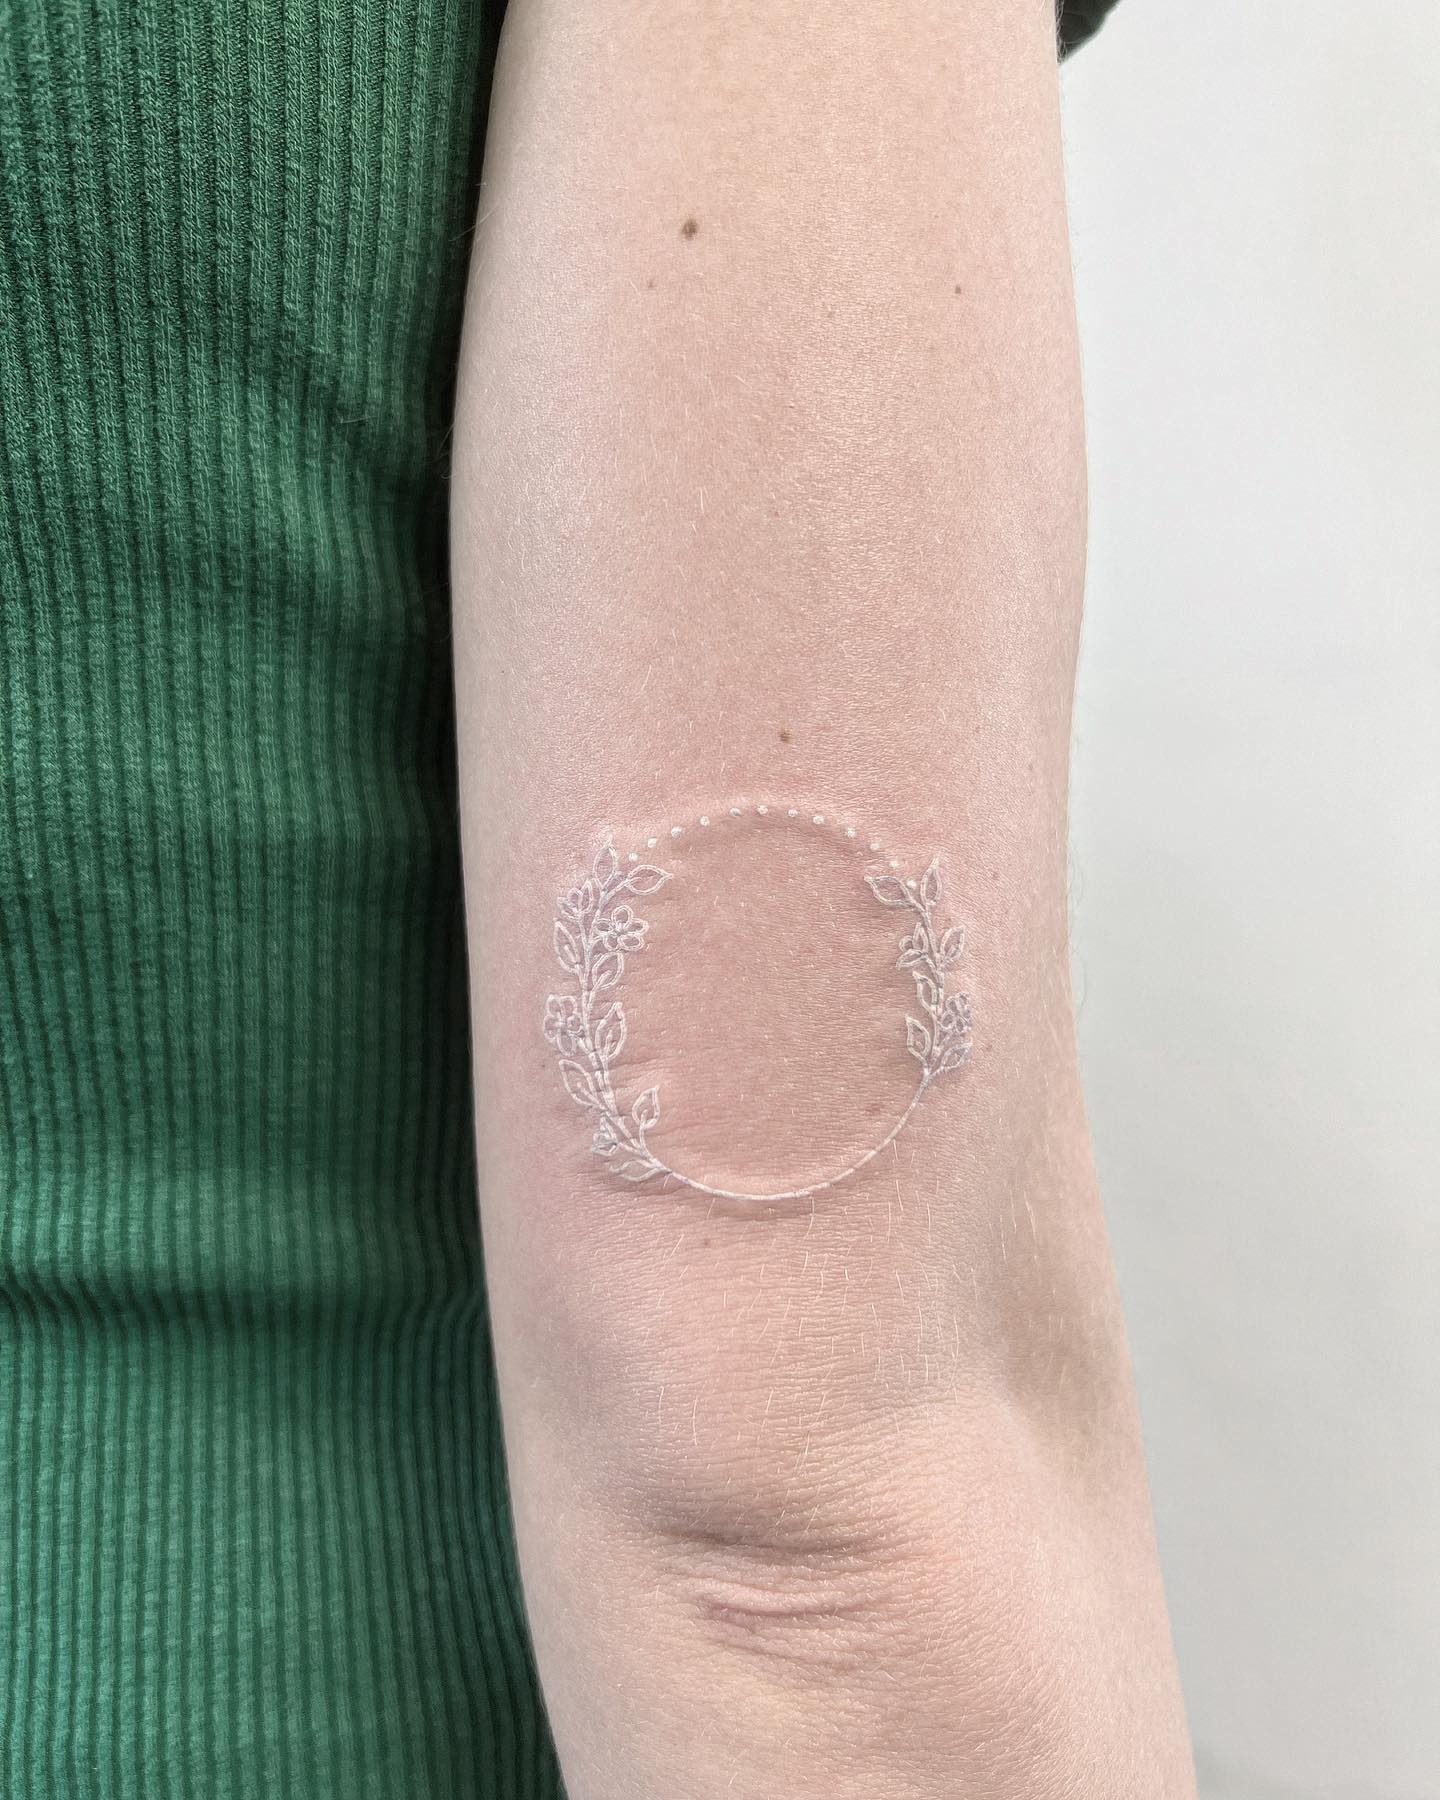 Tatuaje circular de tinta blanca.